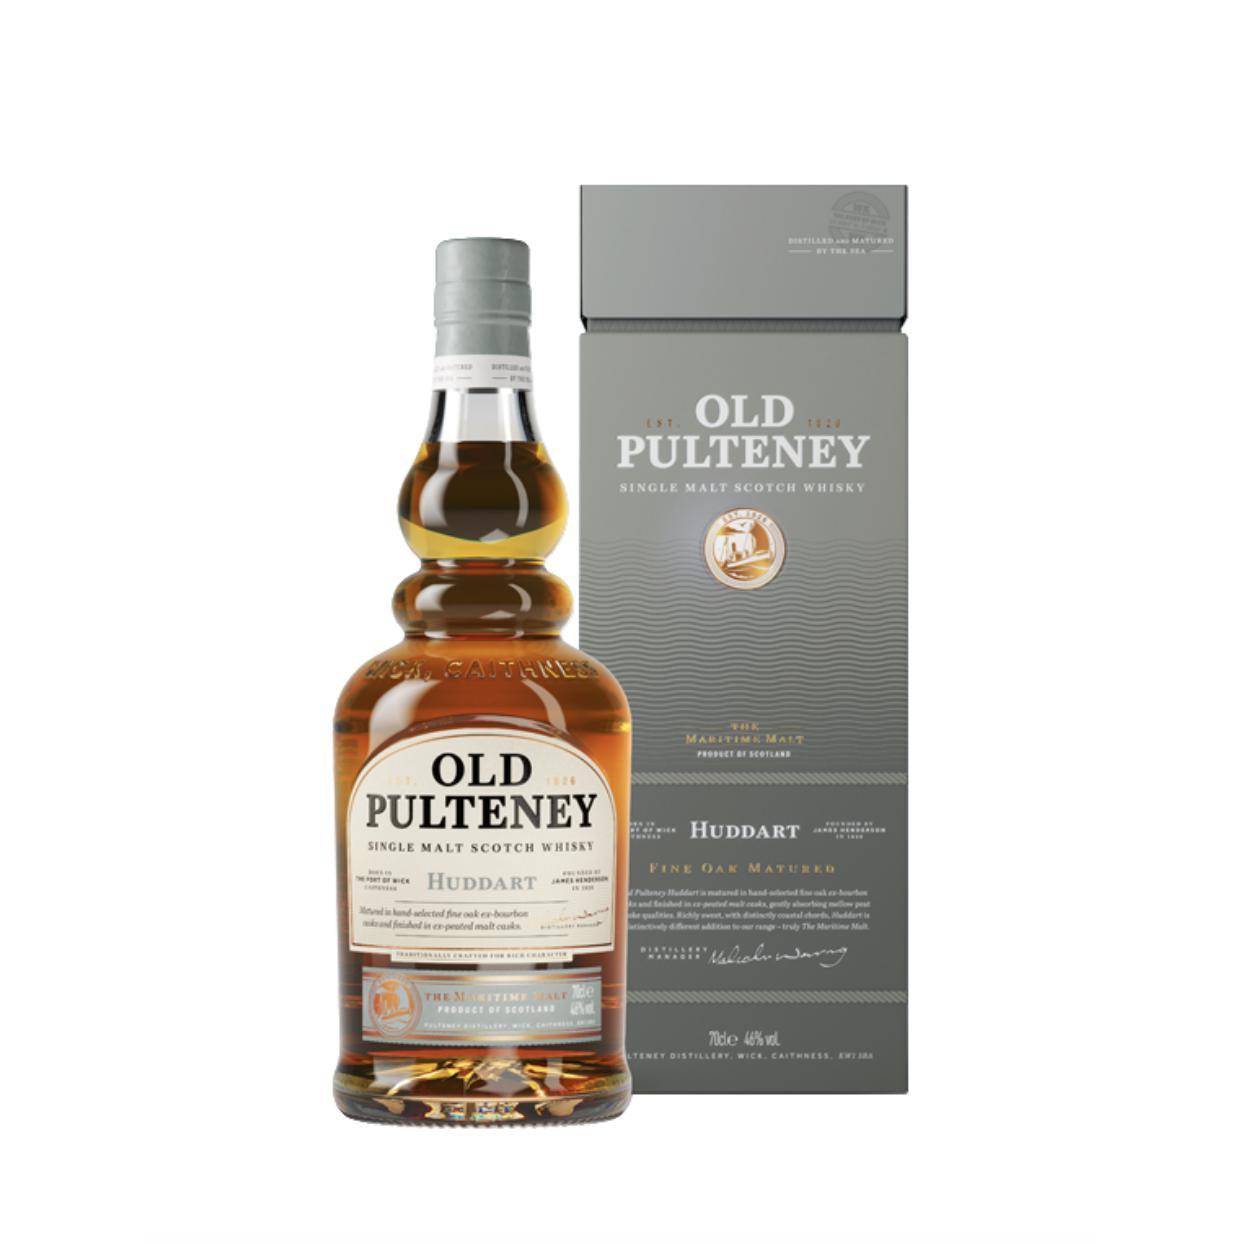 Old Pulteney Single Malt Scotch Whisky Huddart Fine Oak Matured